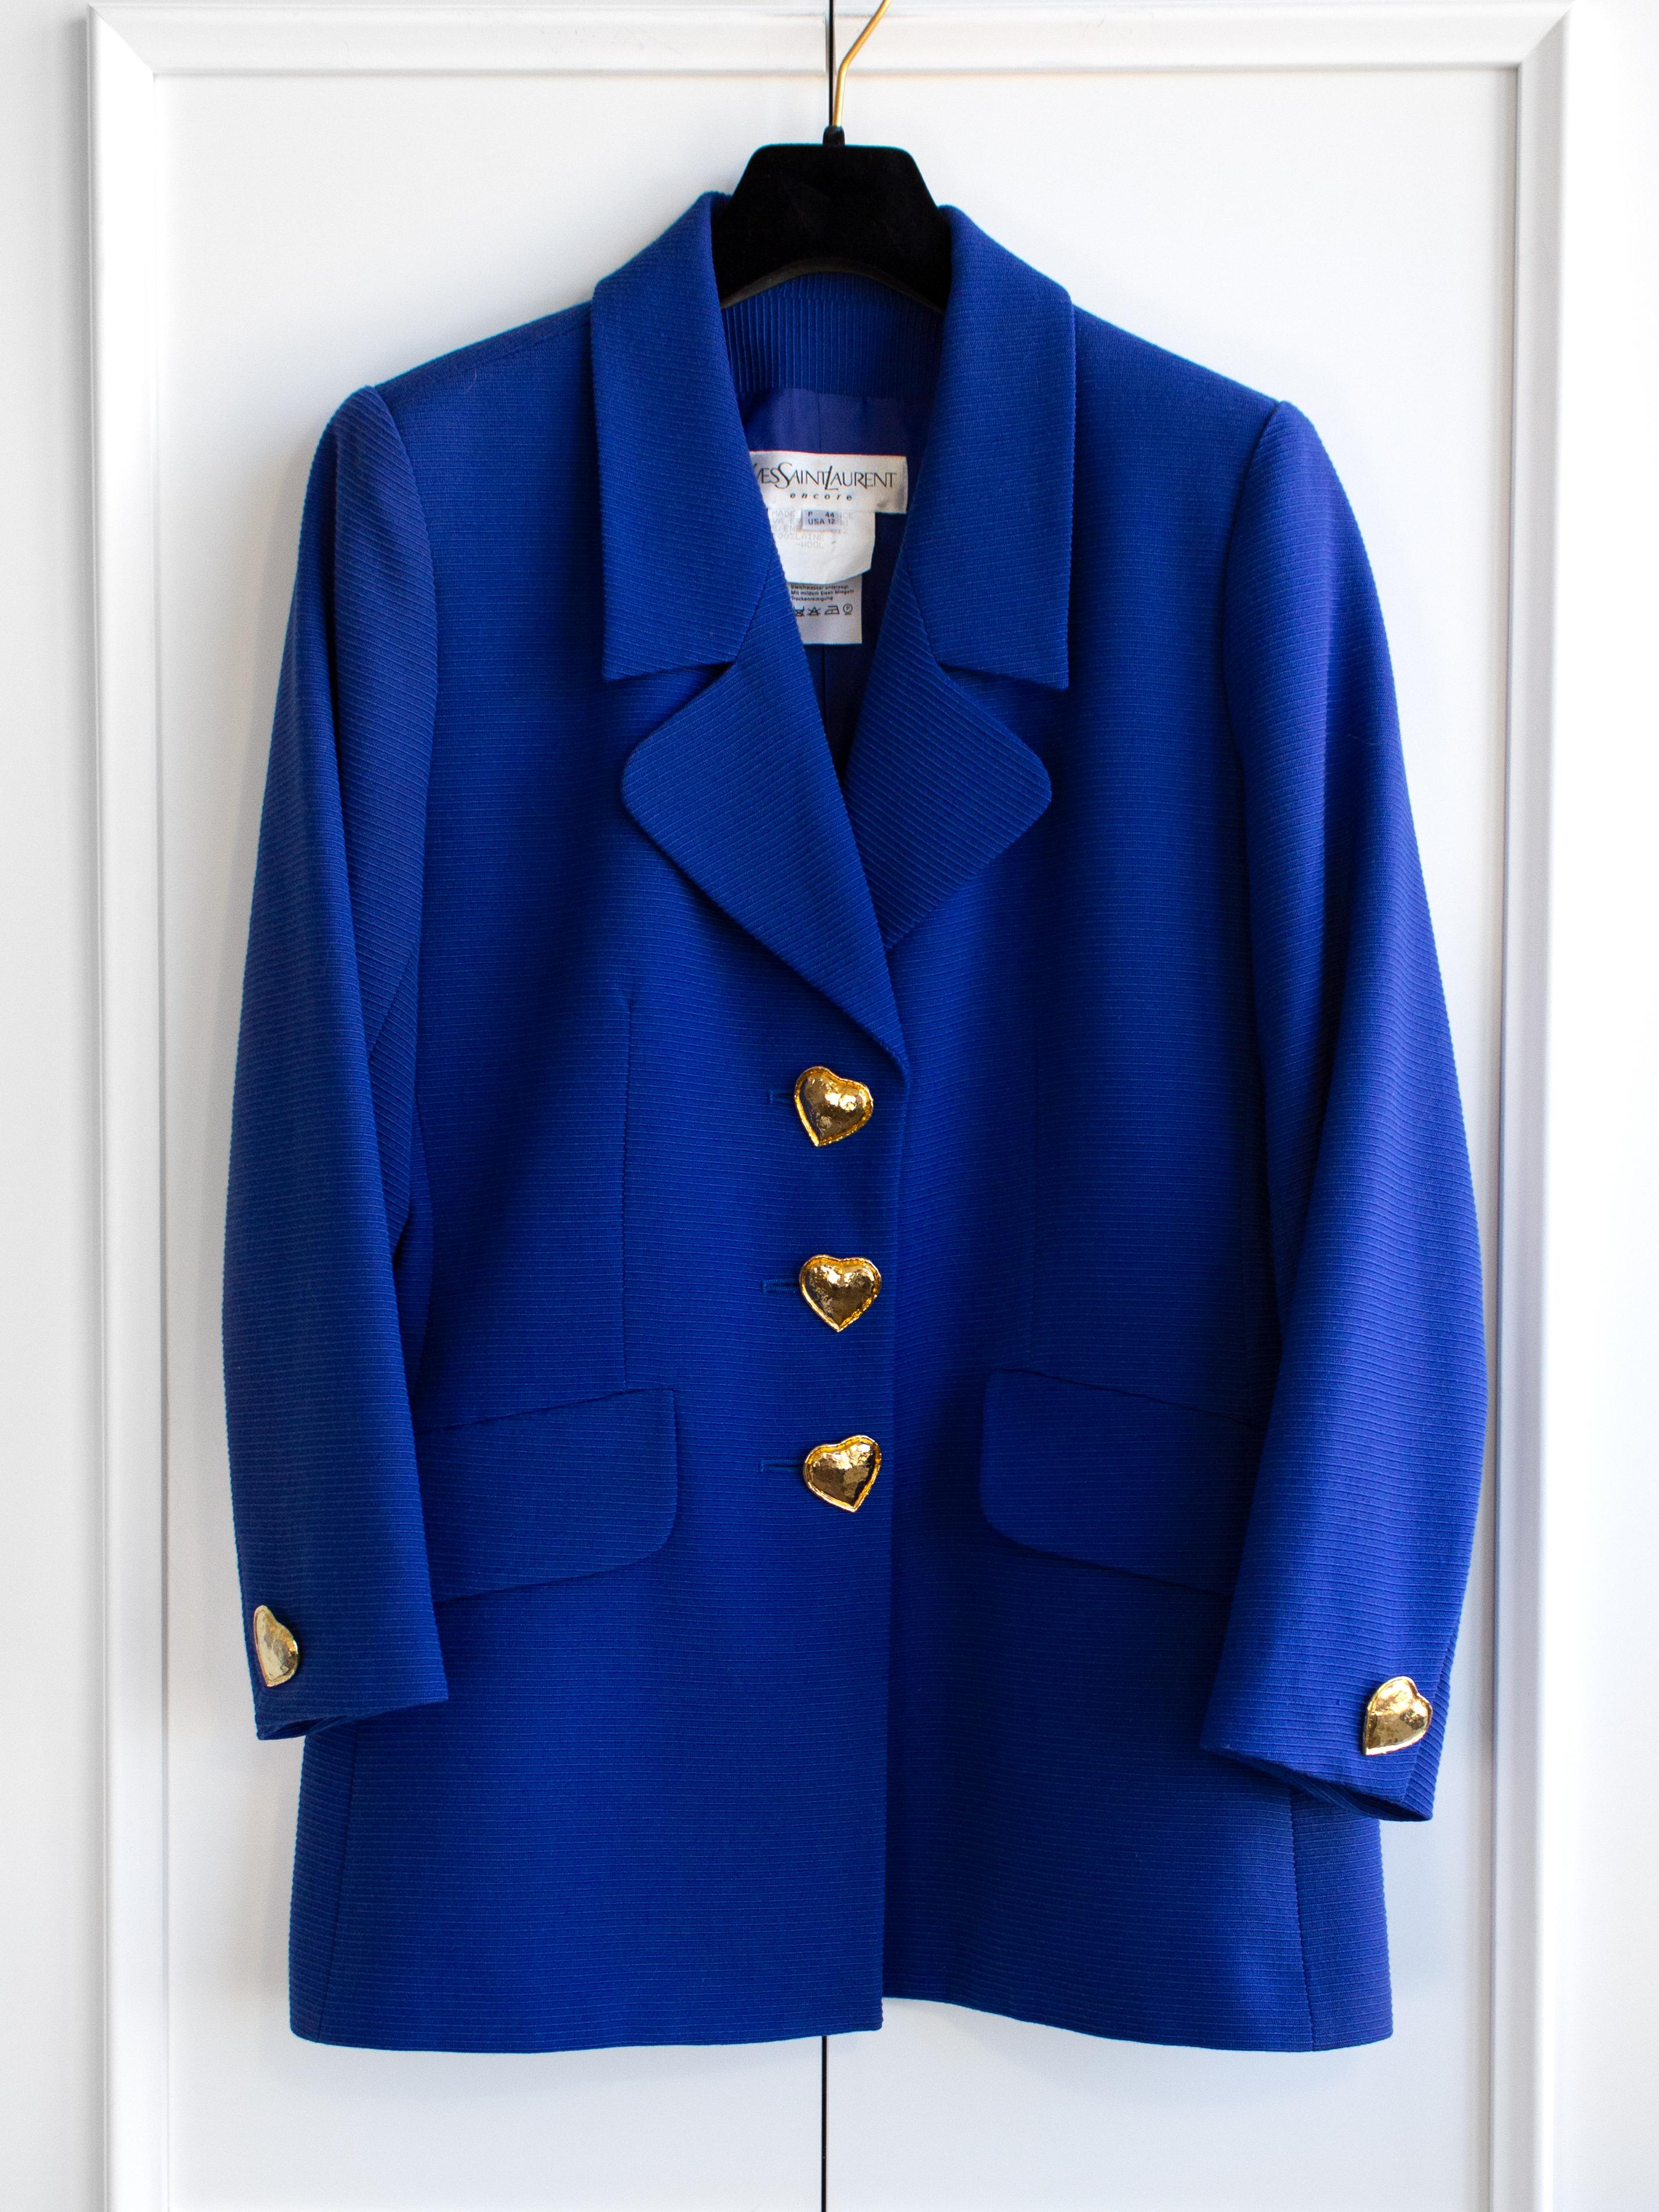 Yves Saint Laurent Encore Vintage S/S 1995 Royal Blue Gold Hearts Jacket Suit For Sale 2